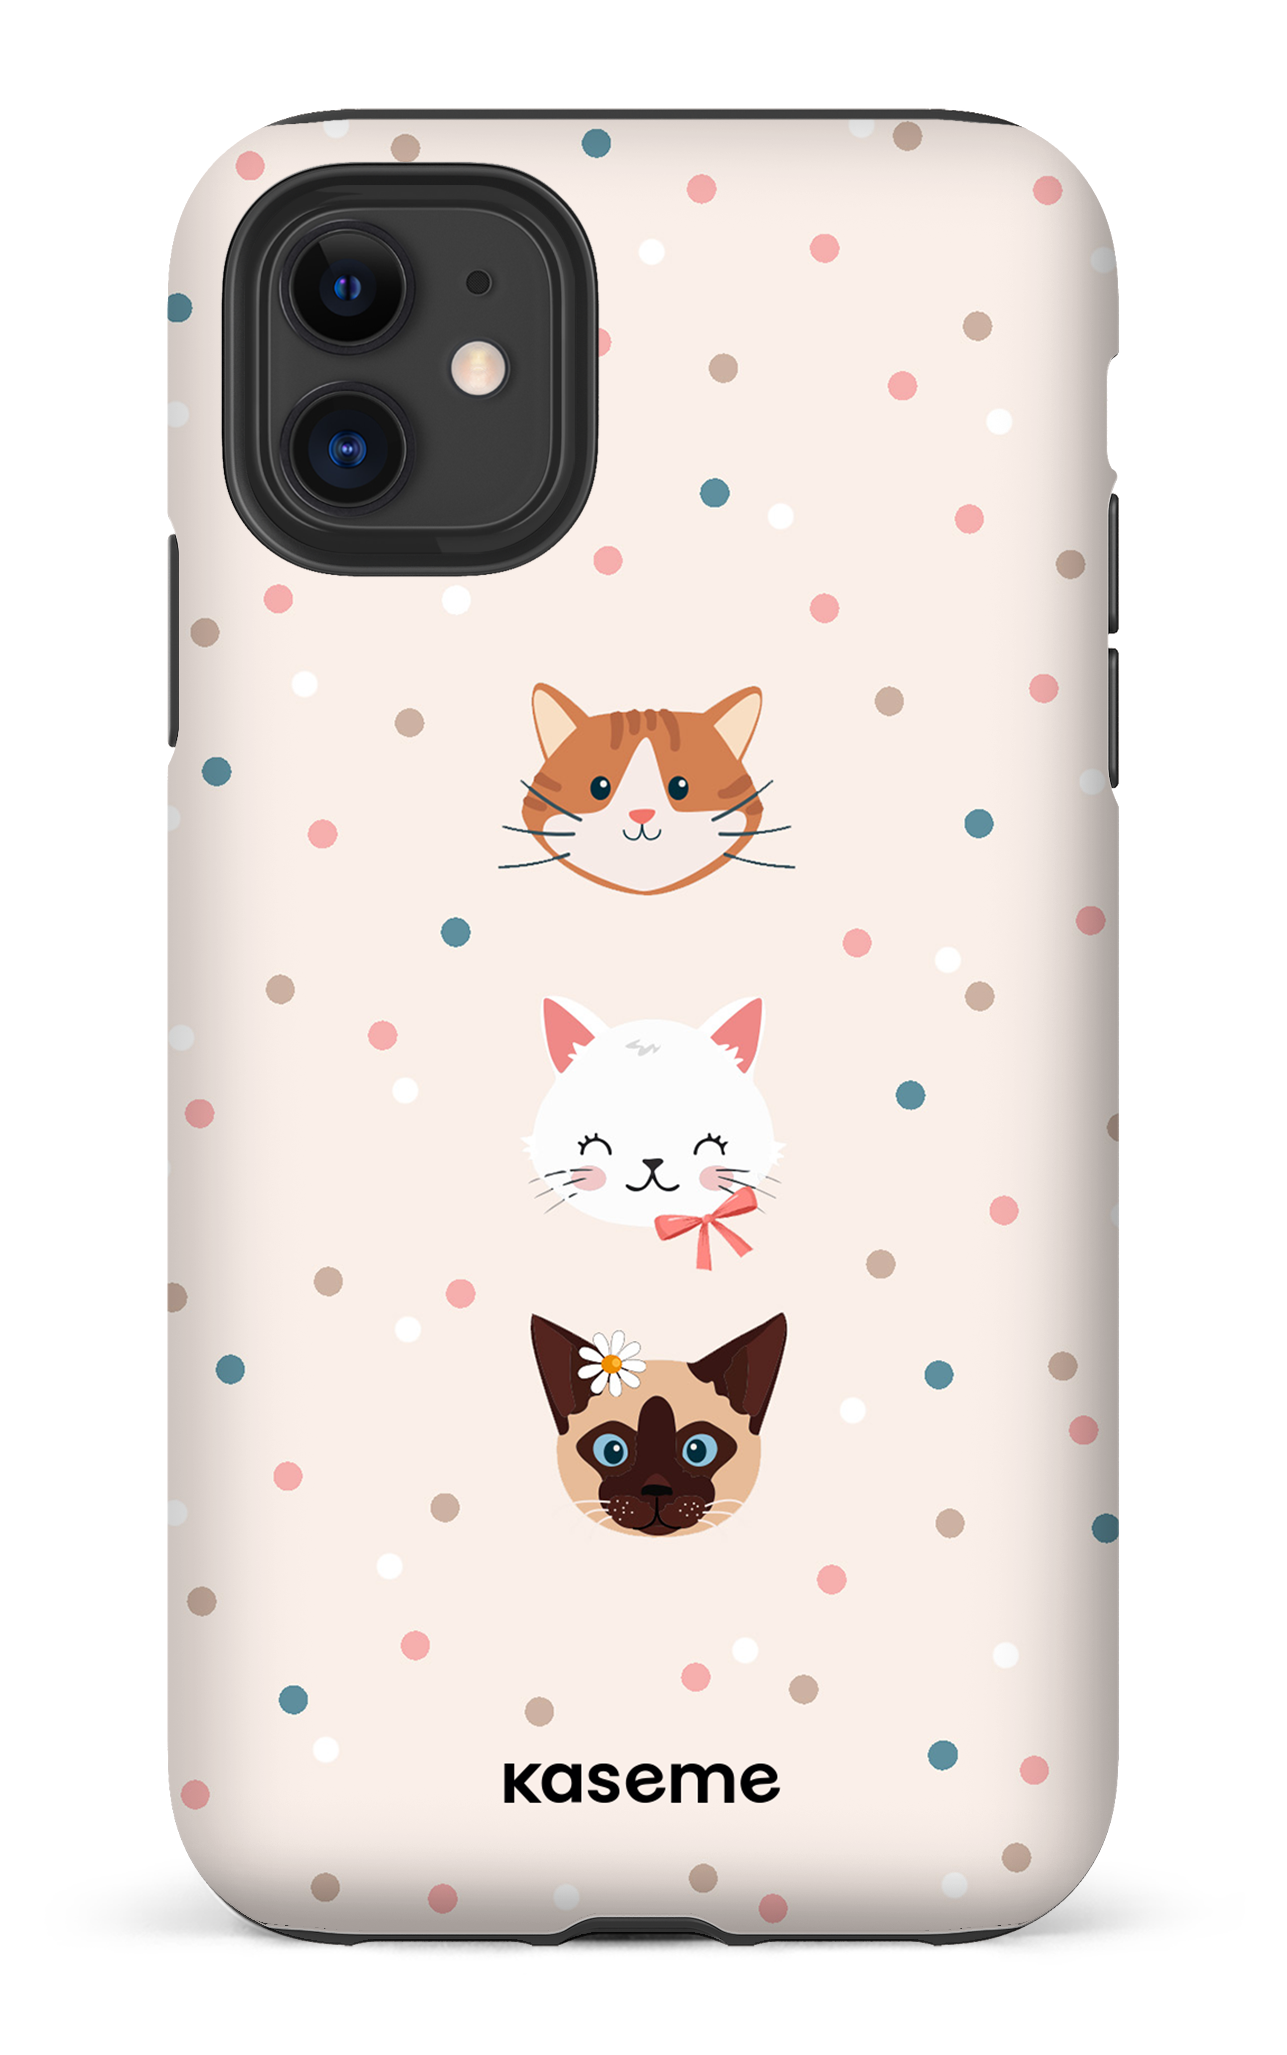 Cat lover - iPhone 11